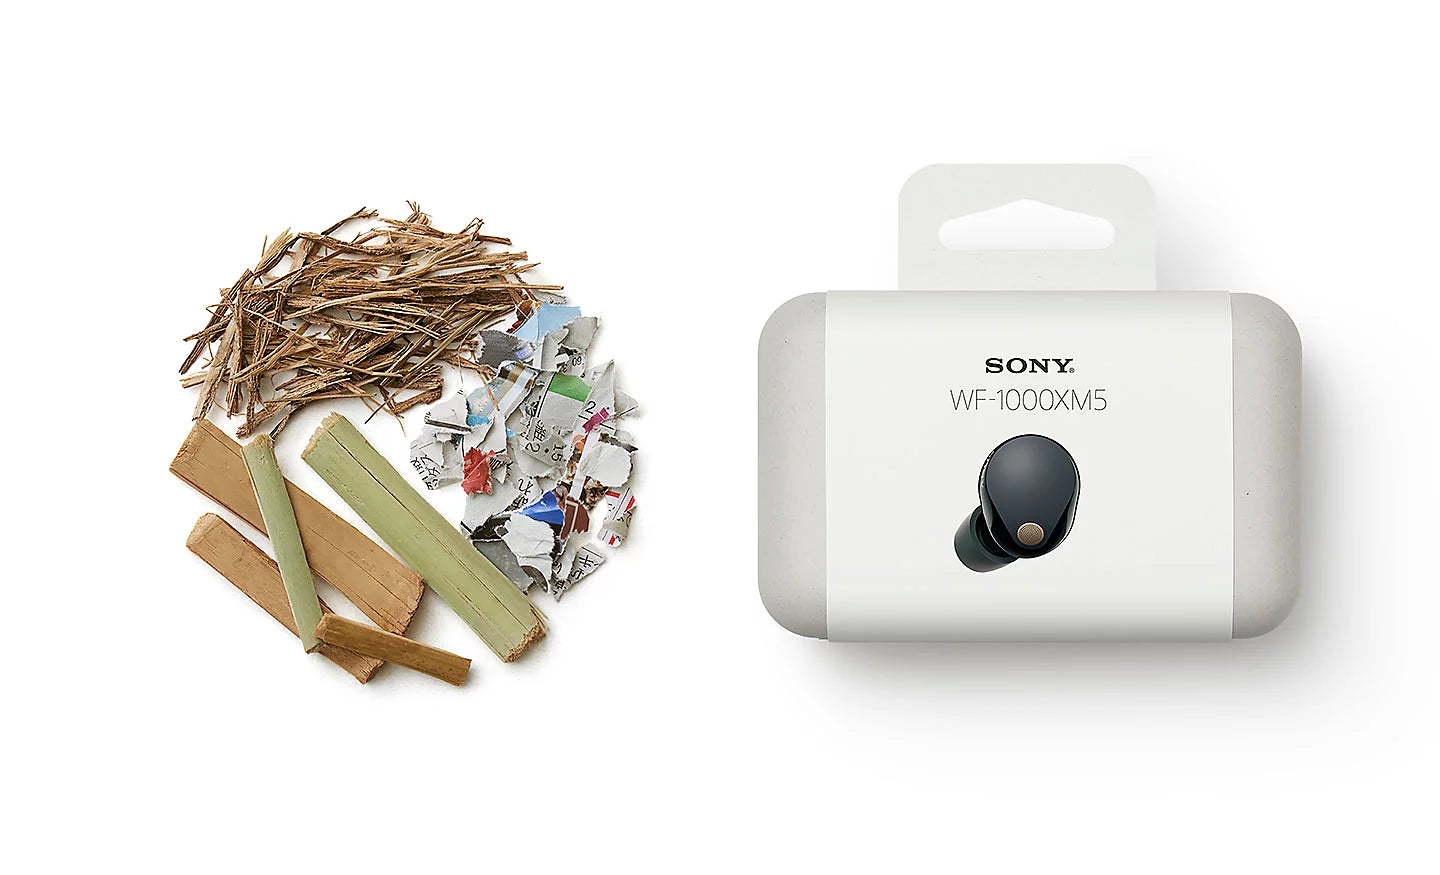 Sony WF-1000XM5 Noise-Canceling True Wireless Earbuds package